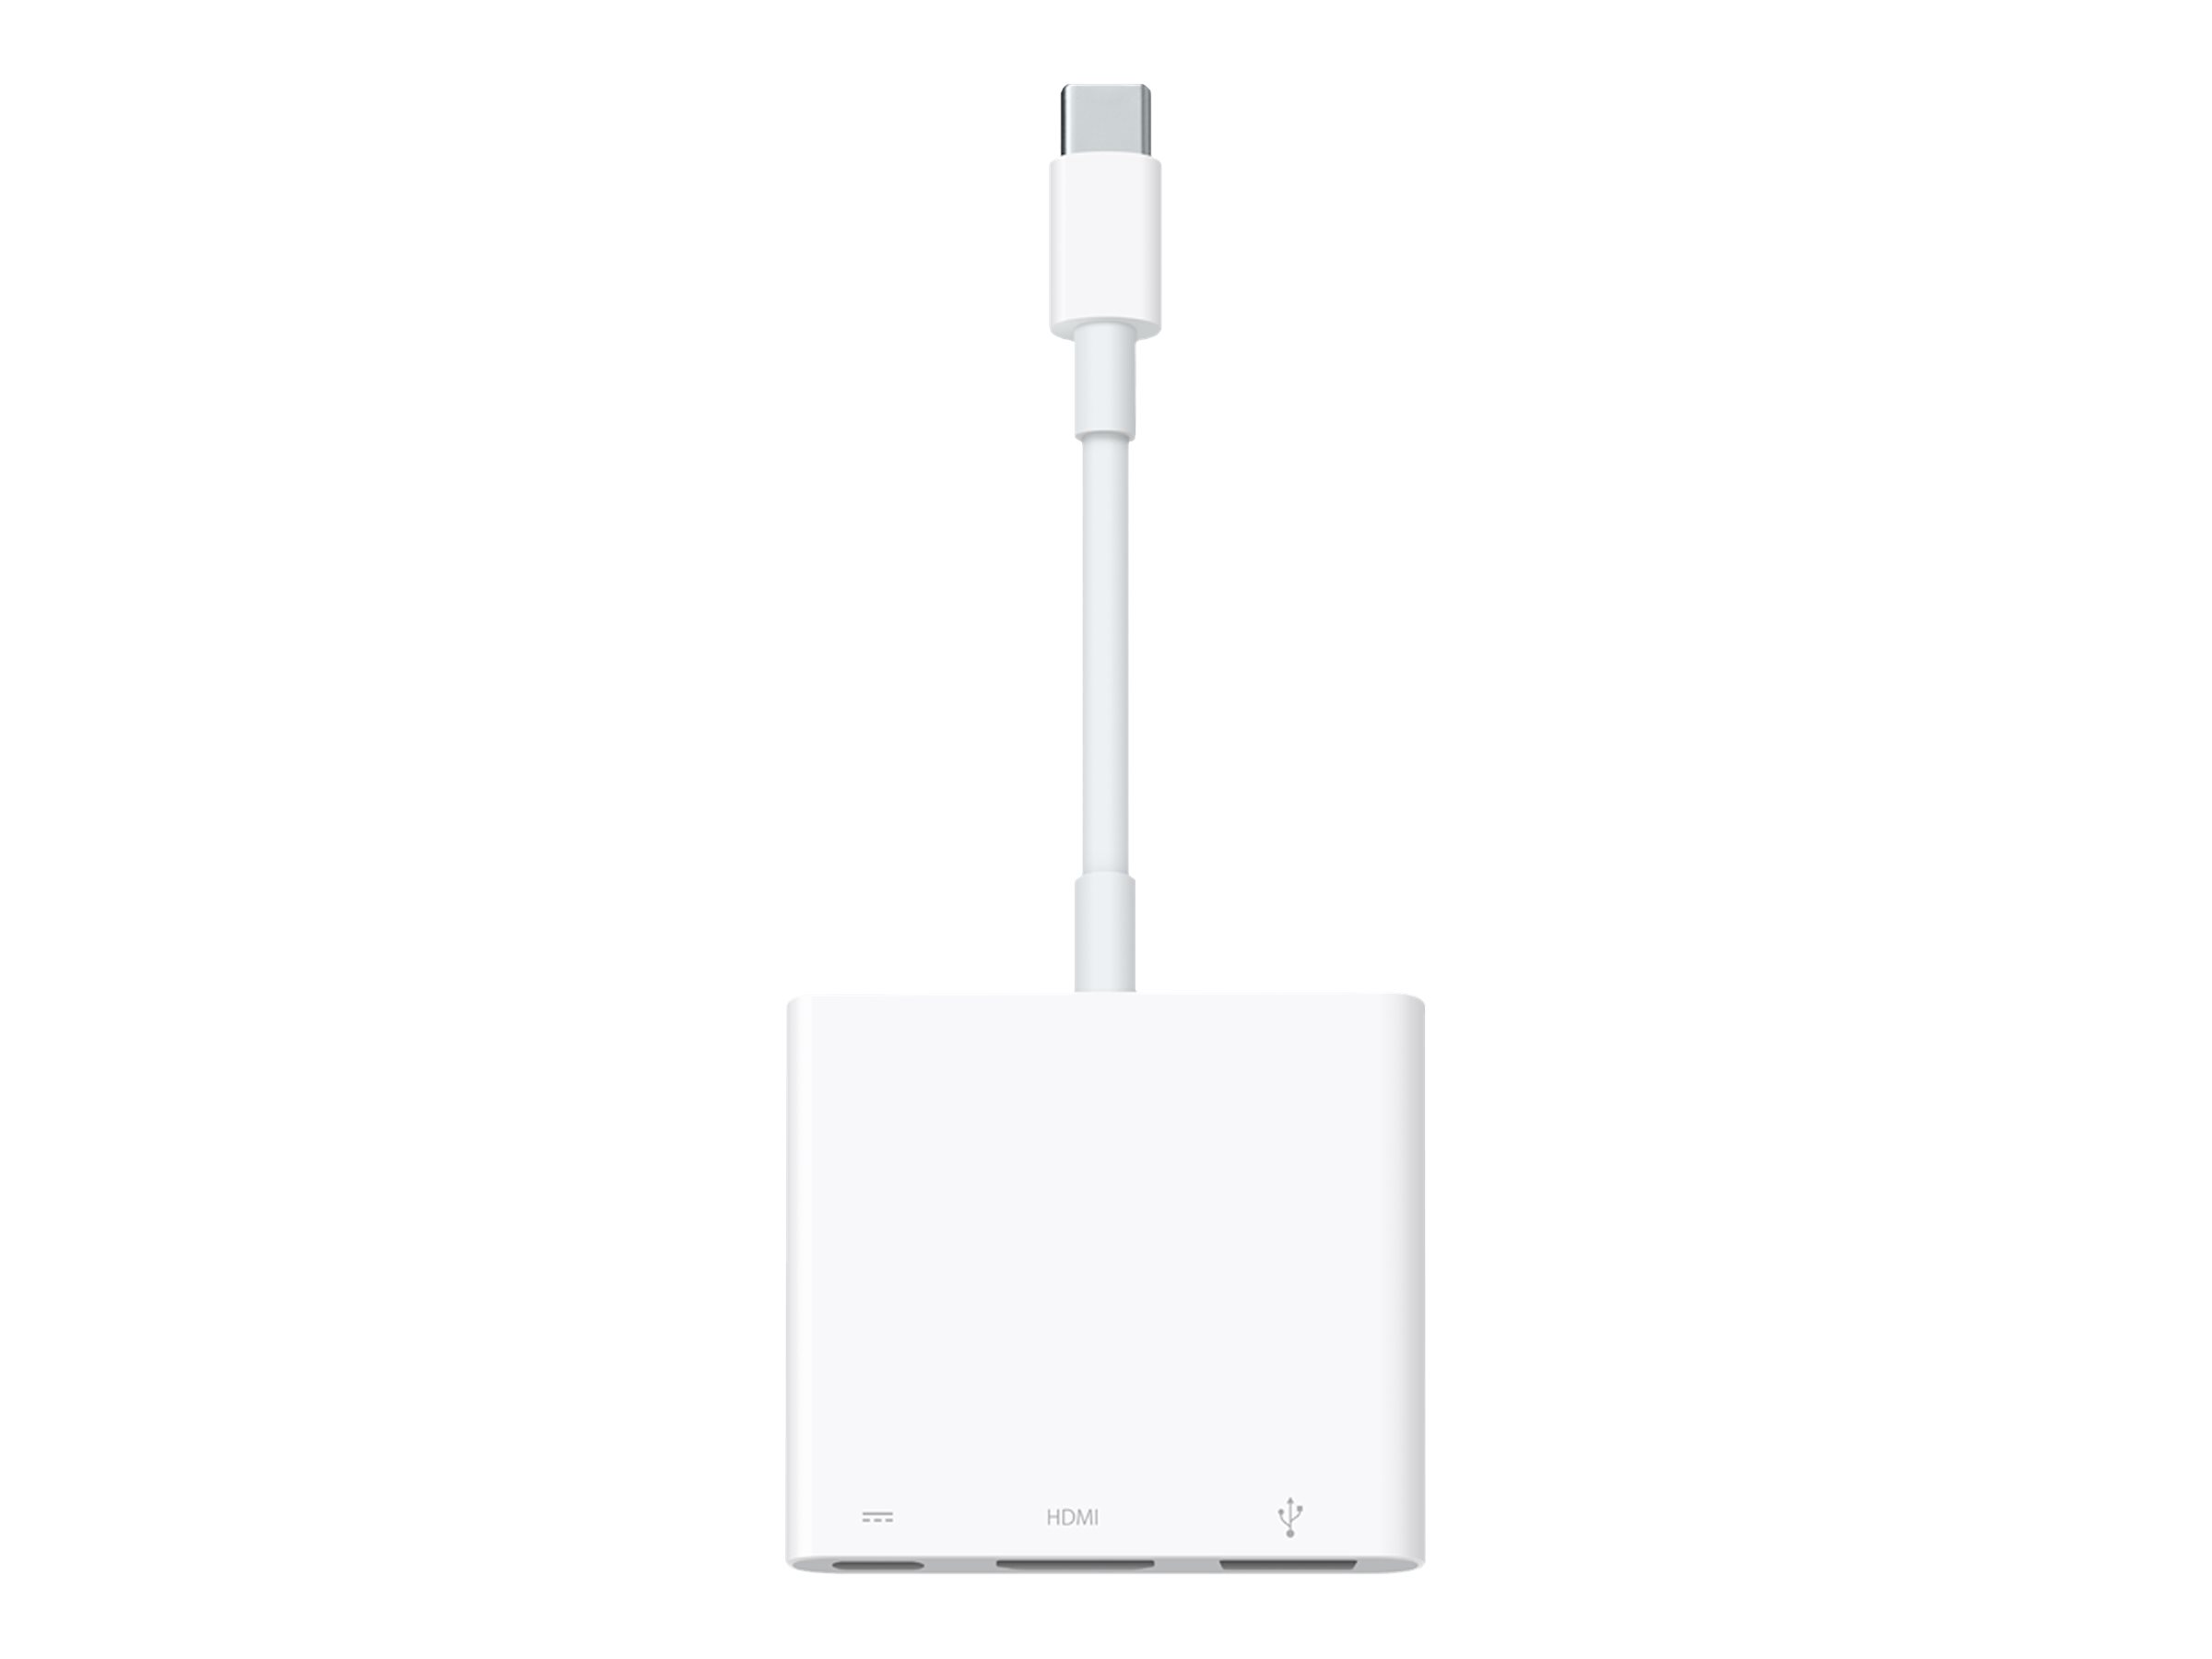 Apple Digital AV Multiport Adapter - video interface converter - HDMI / USB